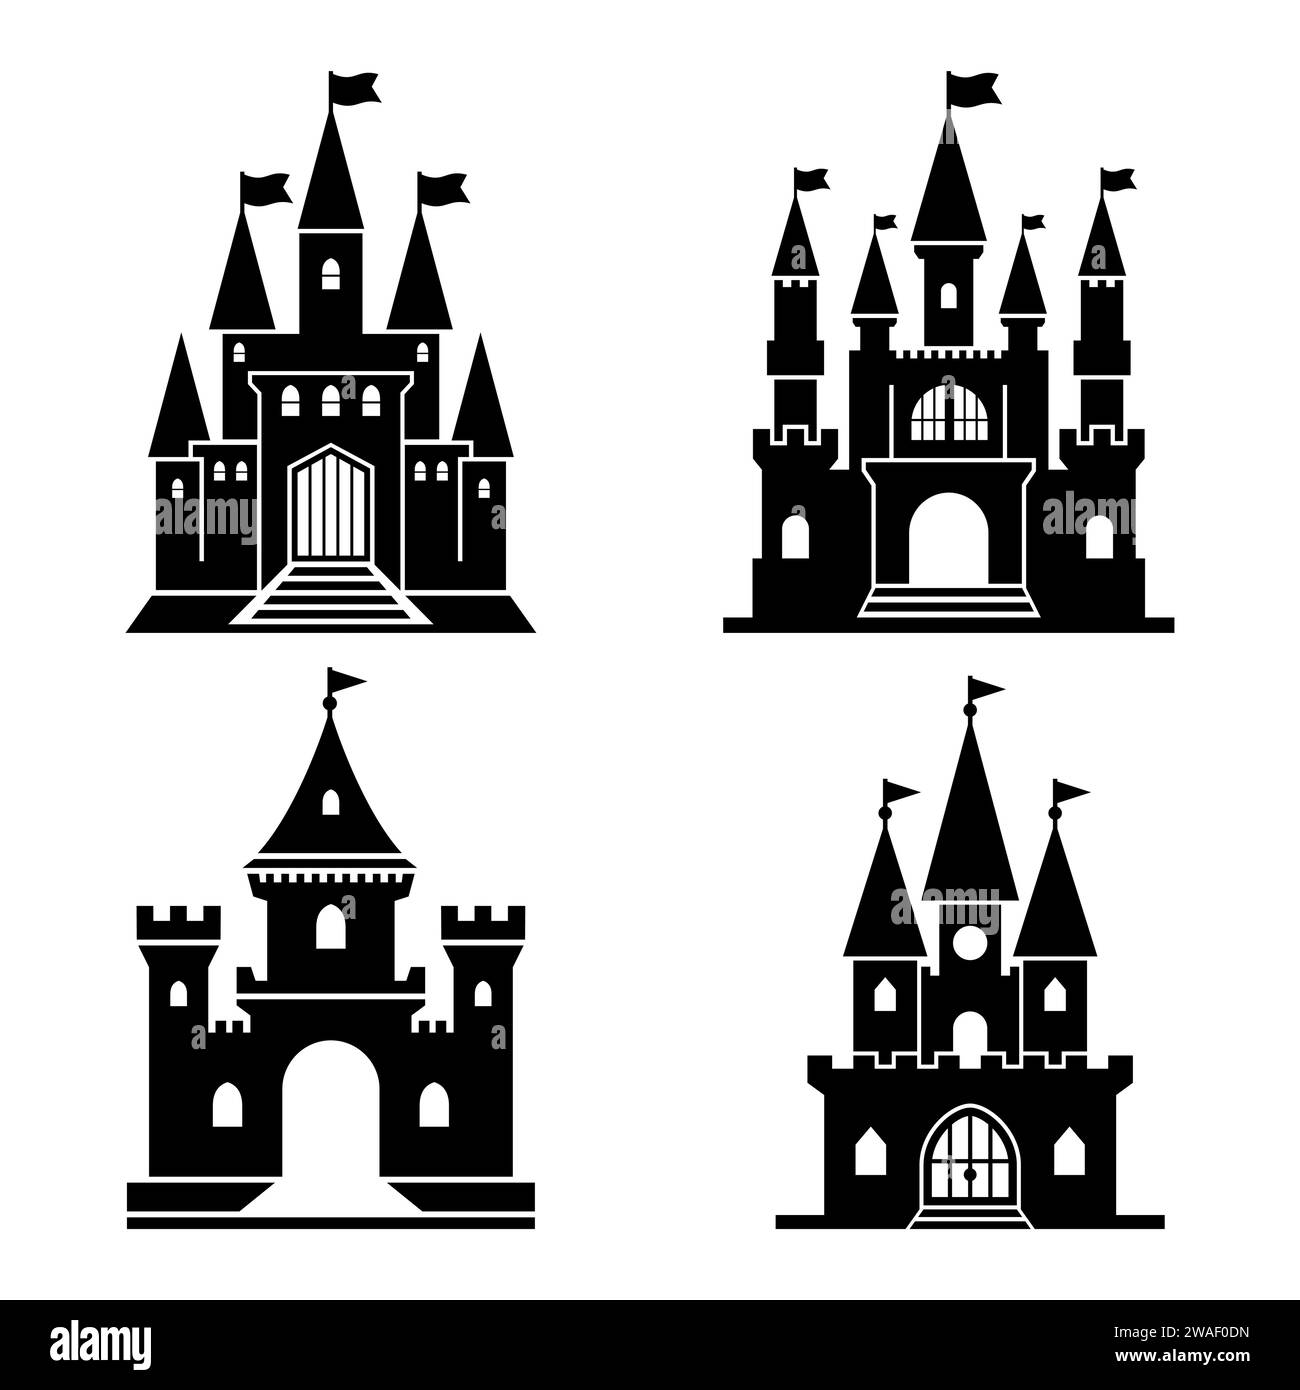 Schwarzes Schloss-Symbol-Set. Kingdom Towers Fantasy Gothic Architektur Gebäude Silhouette Sammlung. Mittelalterlicher Festungspalast. Königliche alte Magie Stock Vektor